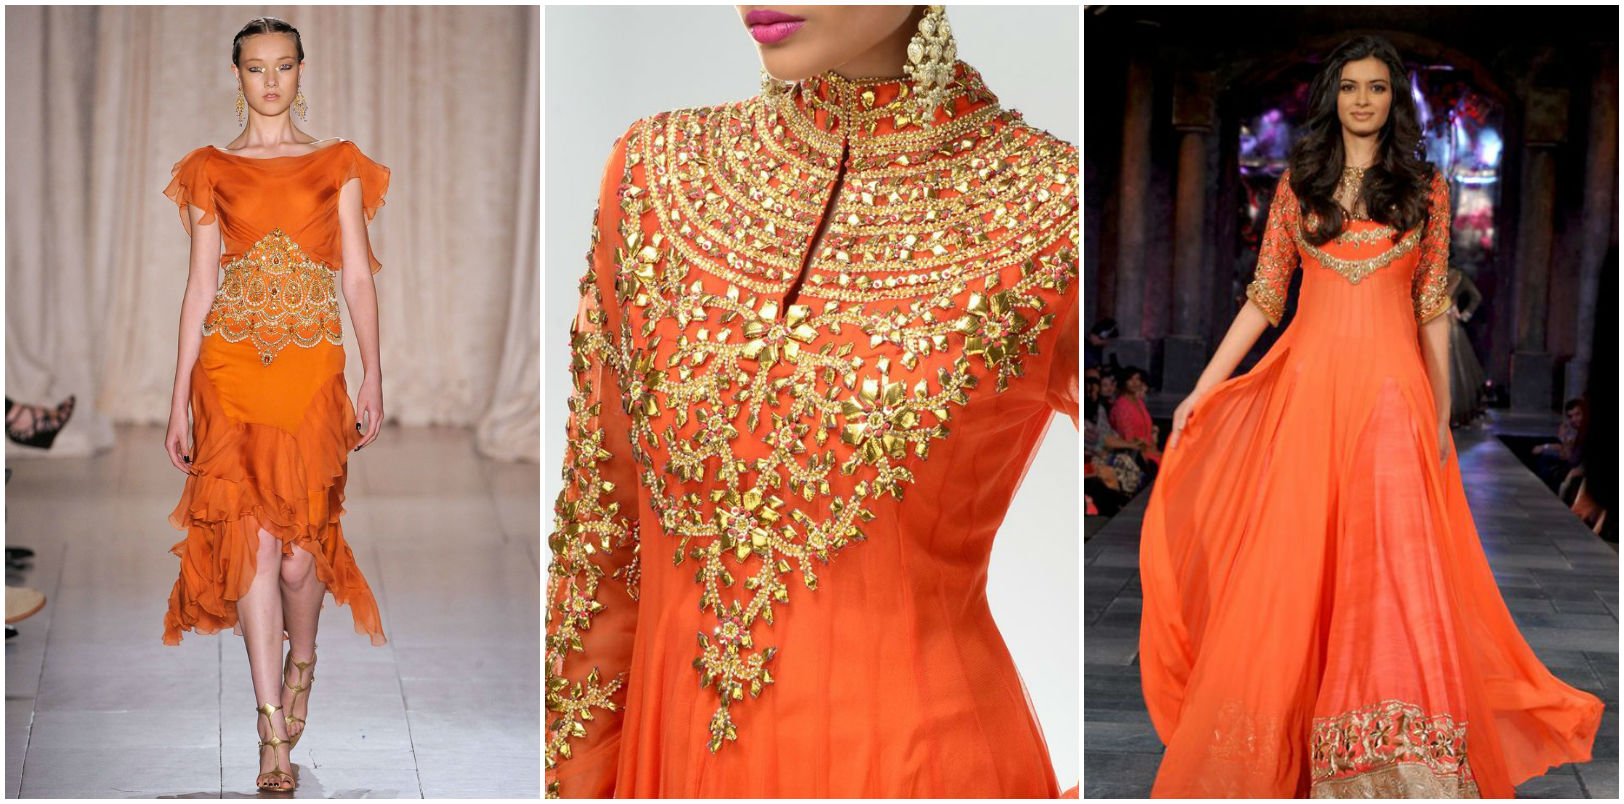 Сочетание оранжевого цвета в одежде - советы по комбинации оранжевого сдругими цветами